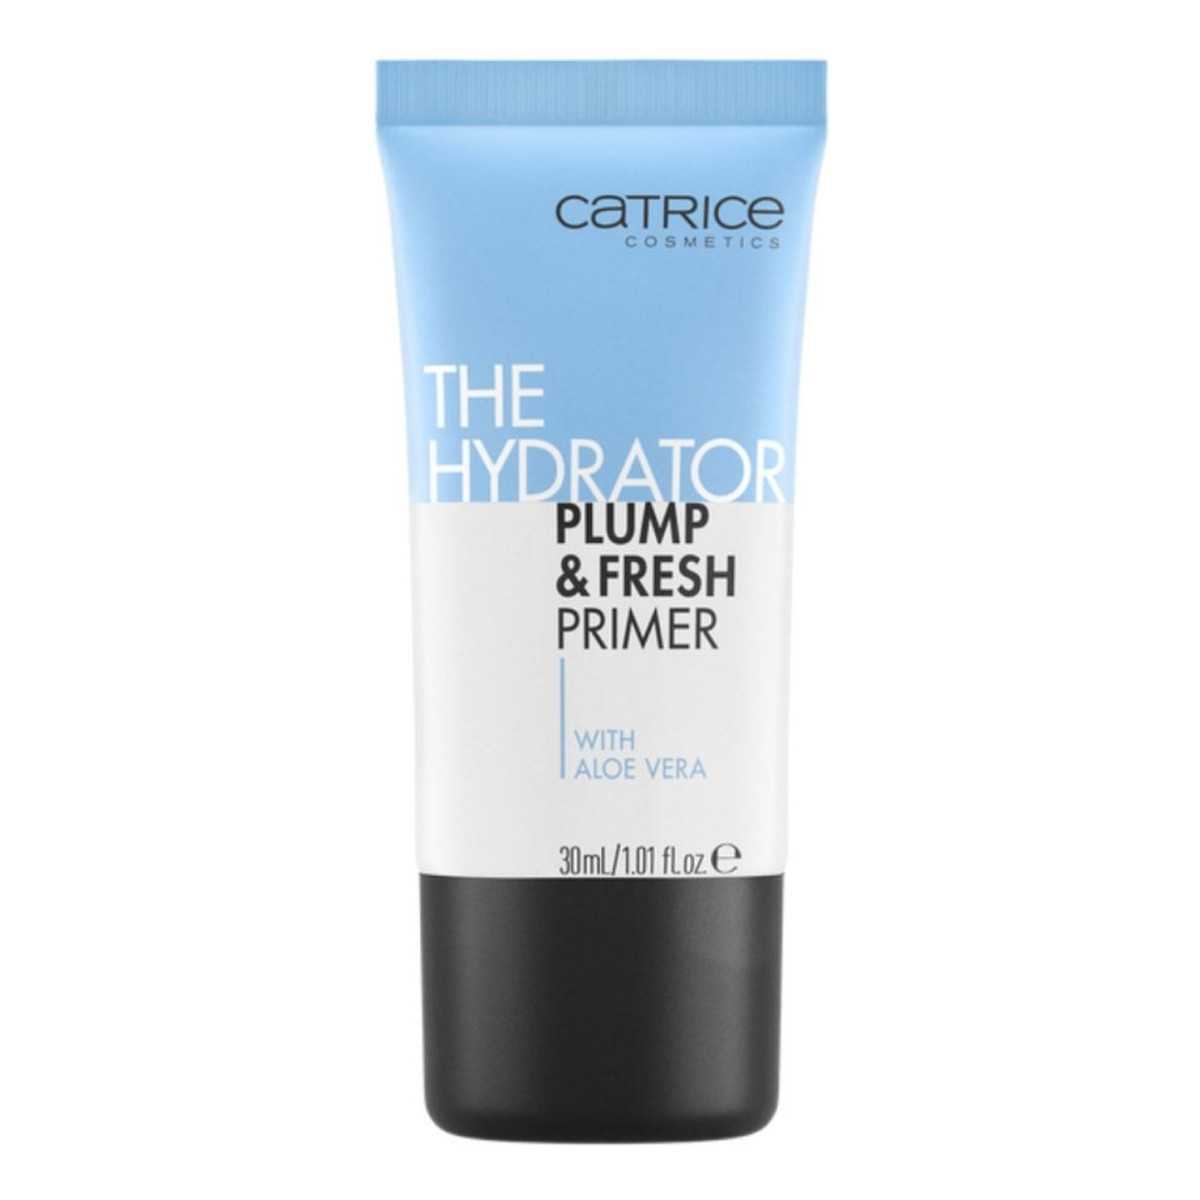 Catrice The Hydrator Plump & Fresh Primer Nawilżająca baza pod makijaż 30ml